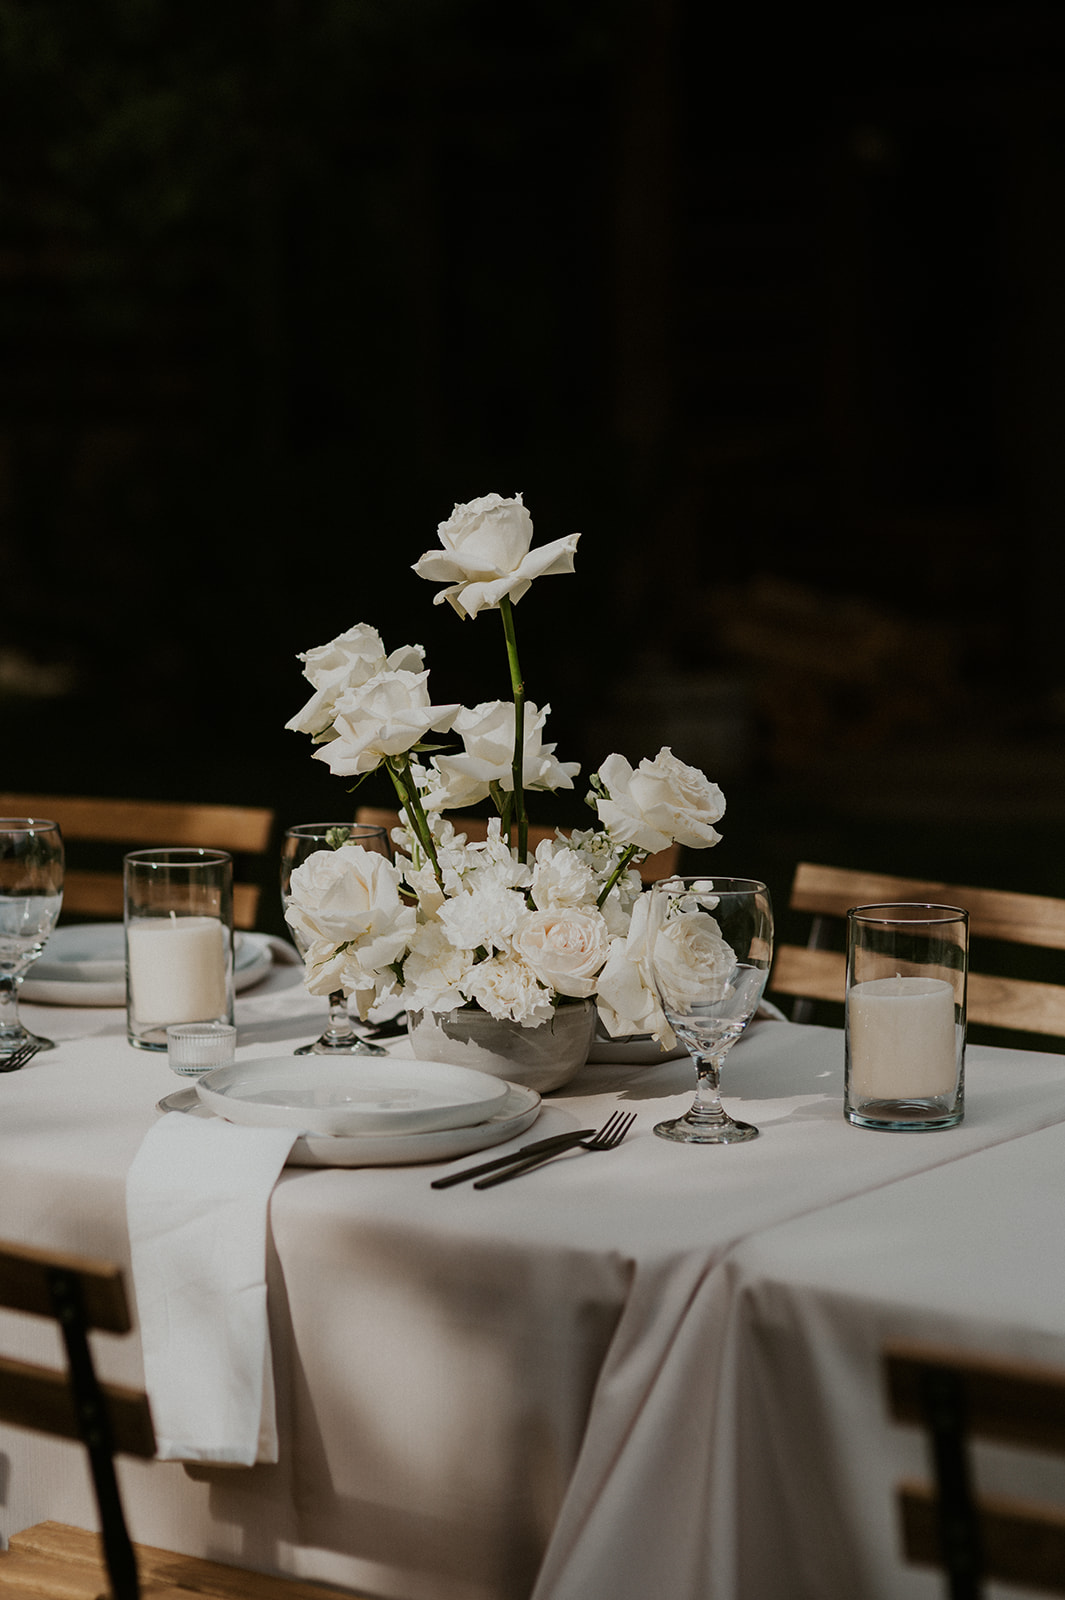 Bud vase modern and elegant wedding table design. All white flowers